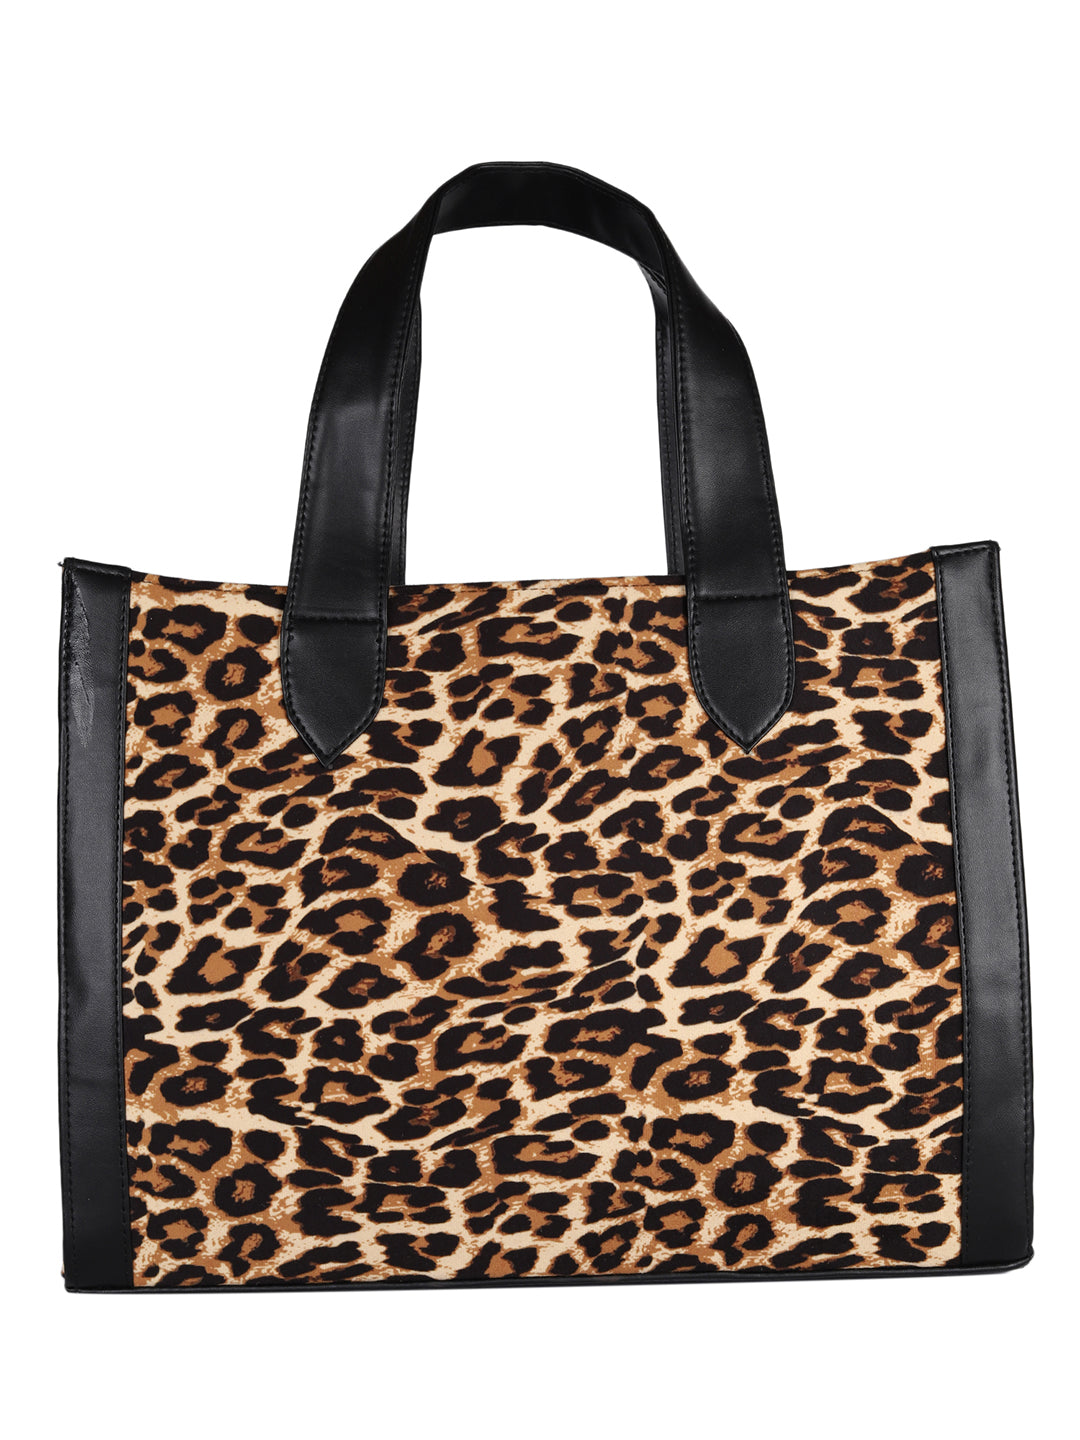 Manhattan Leopard Tote Bag